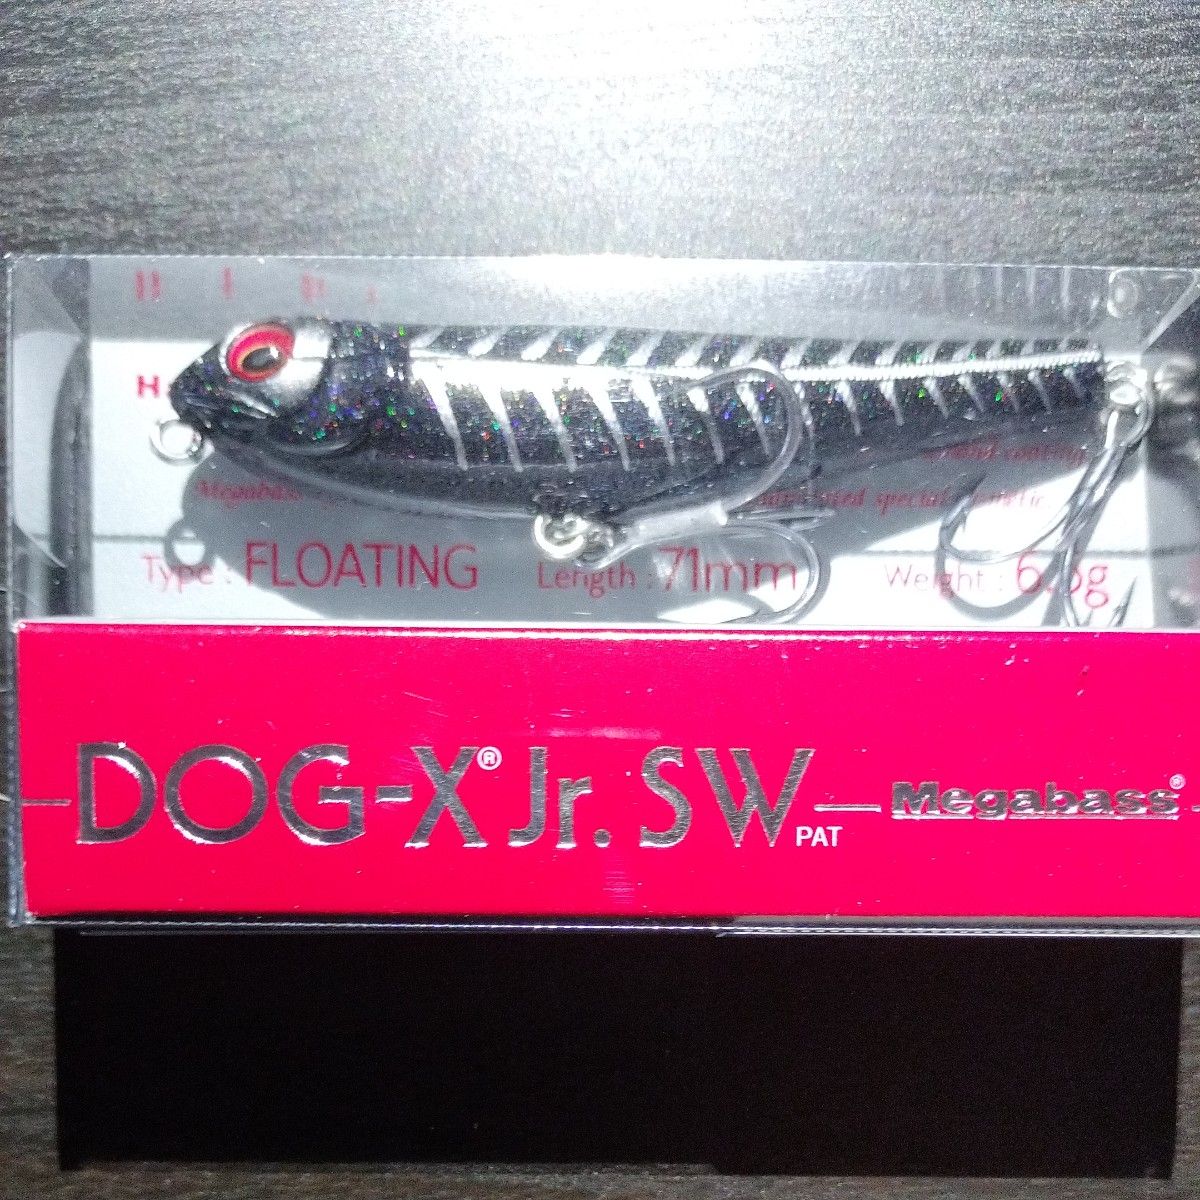 【新製品】メガバス DOG-X Jr. SW (ドッグエックス ジュニアSW) ブラックボーン